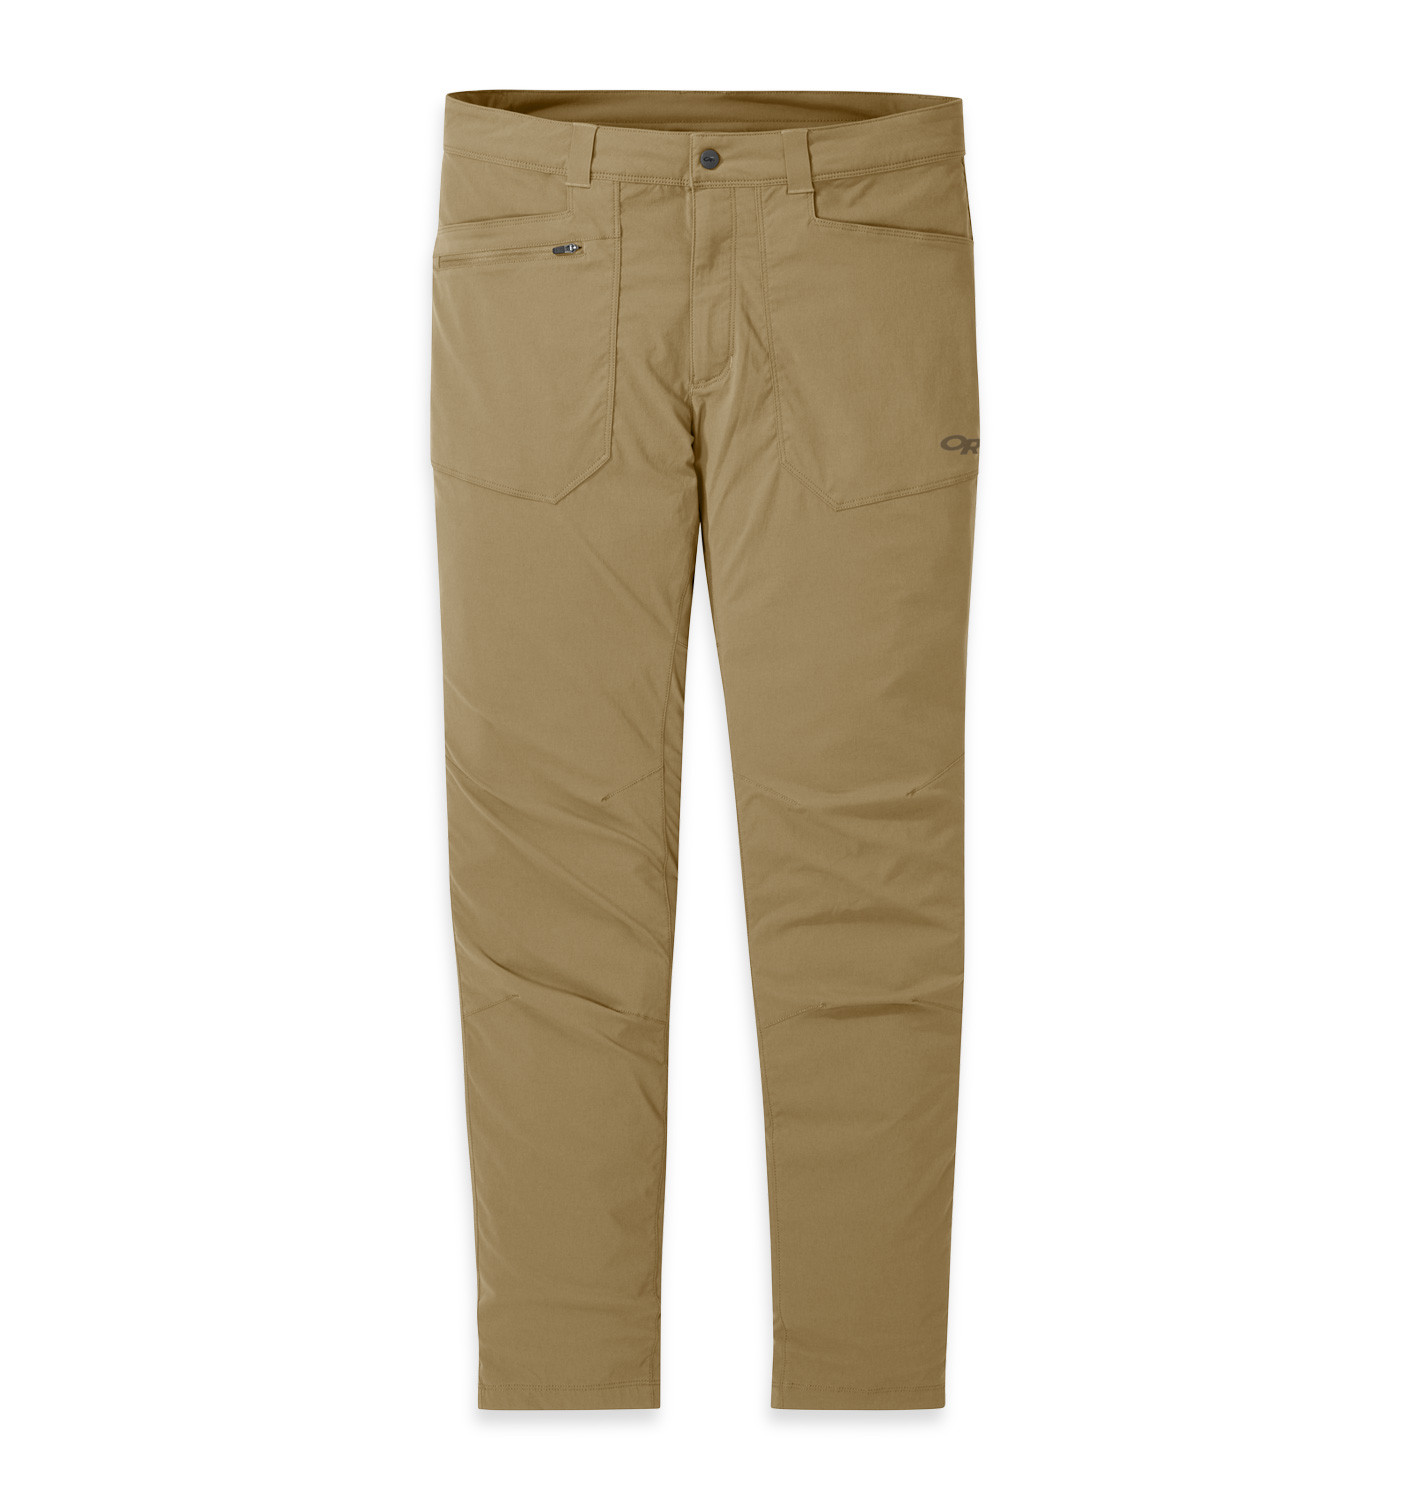 Outdoor Research Men's Equinox Pants - 32", cafe - 34  